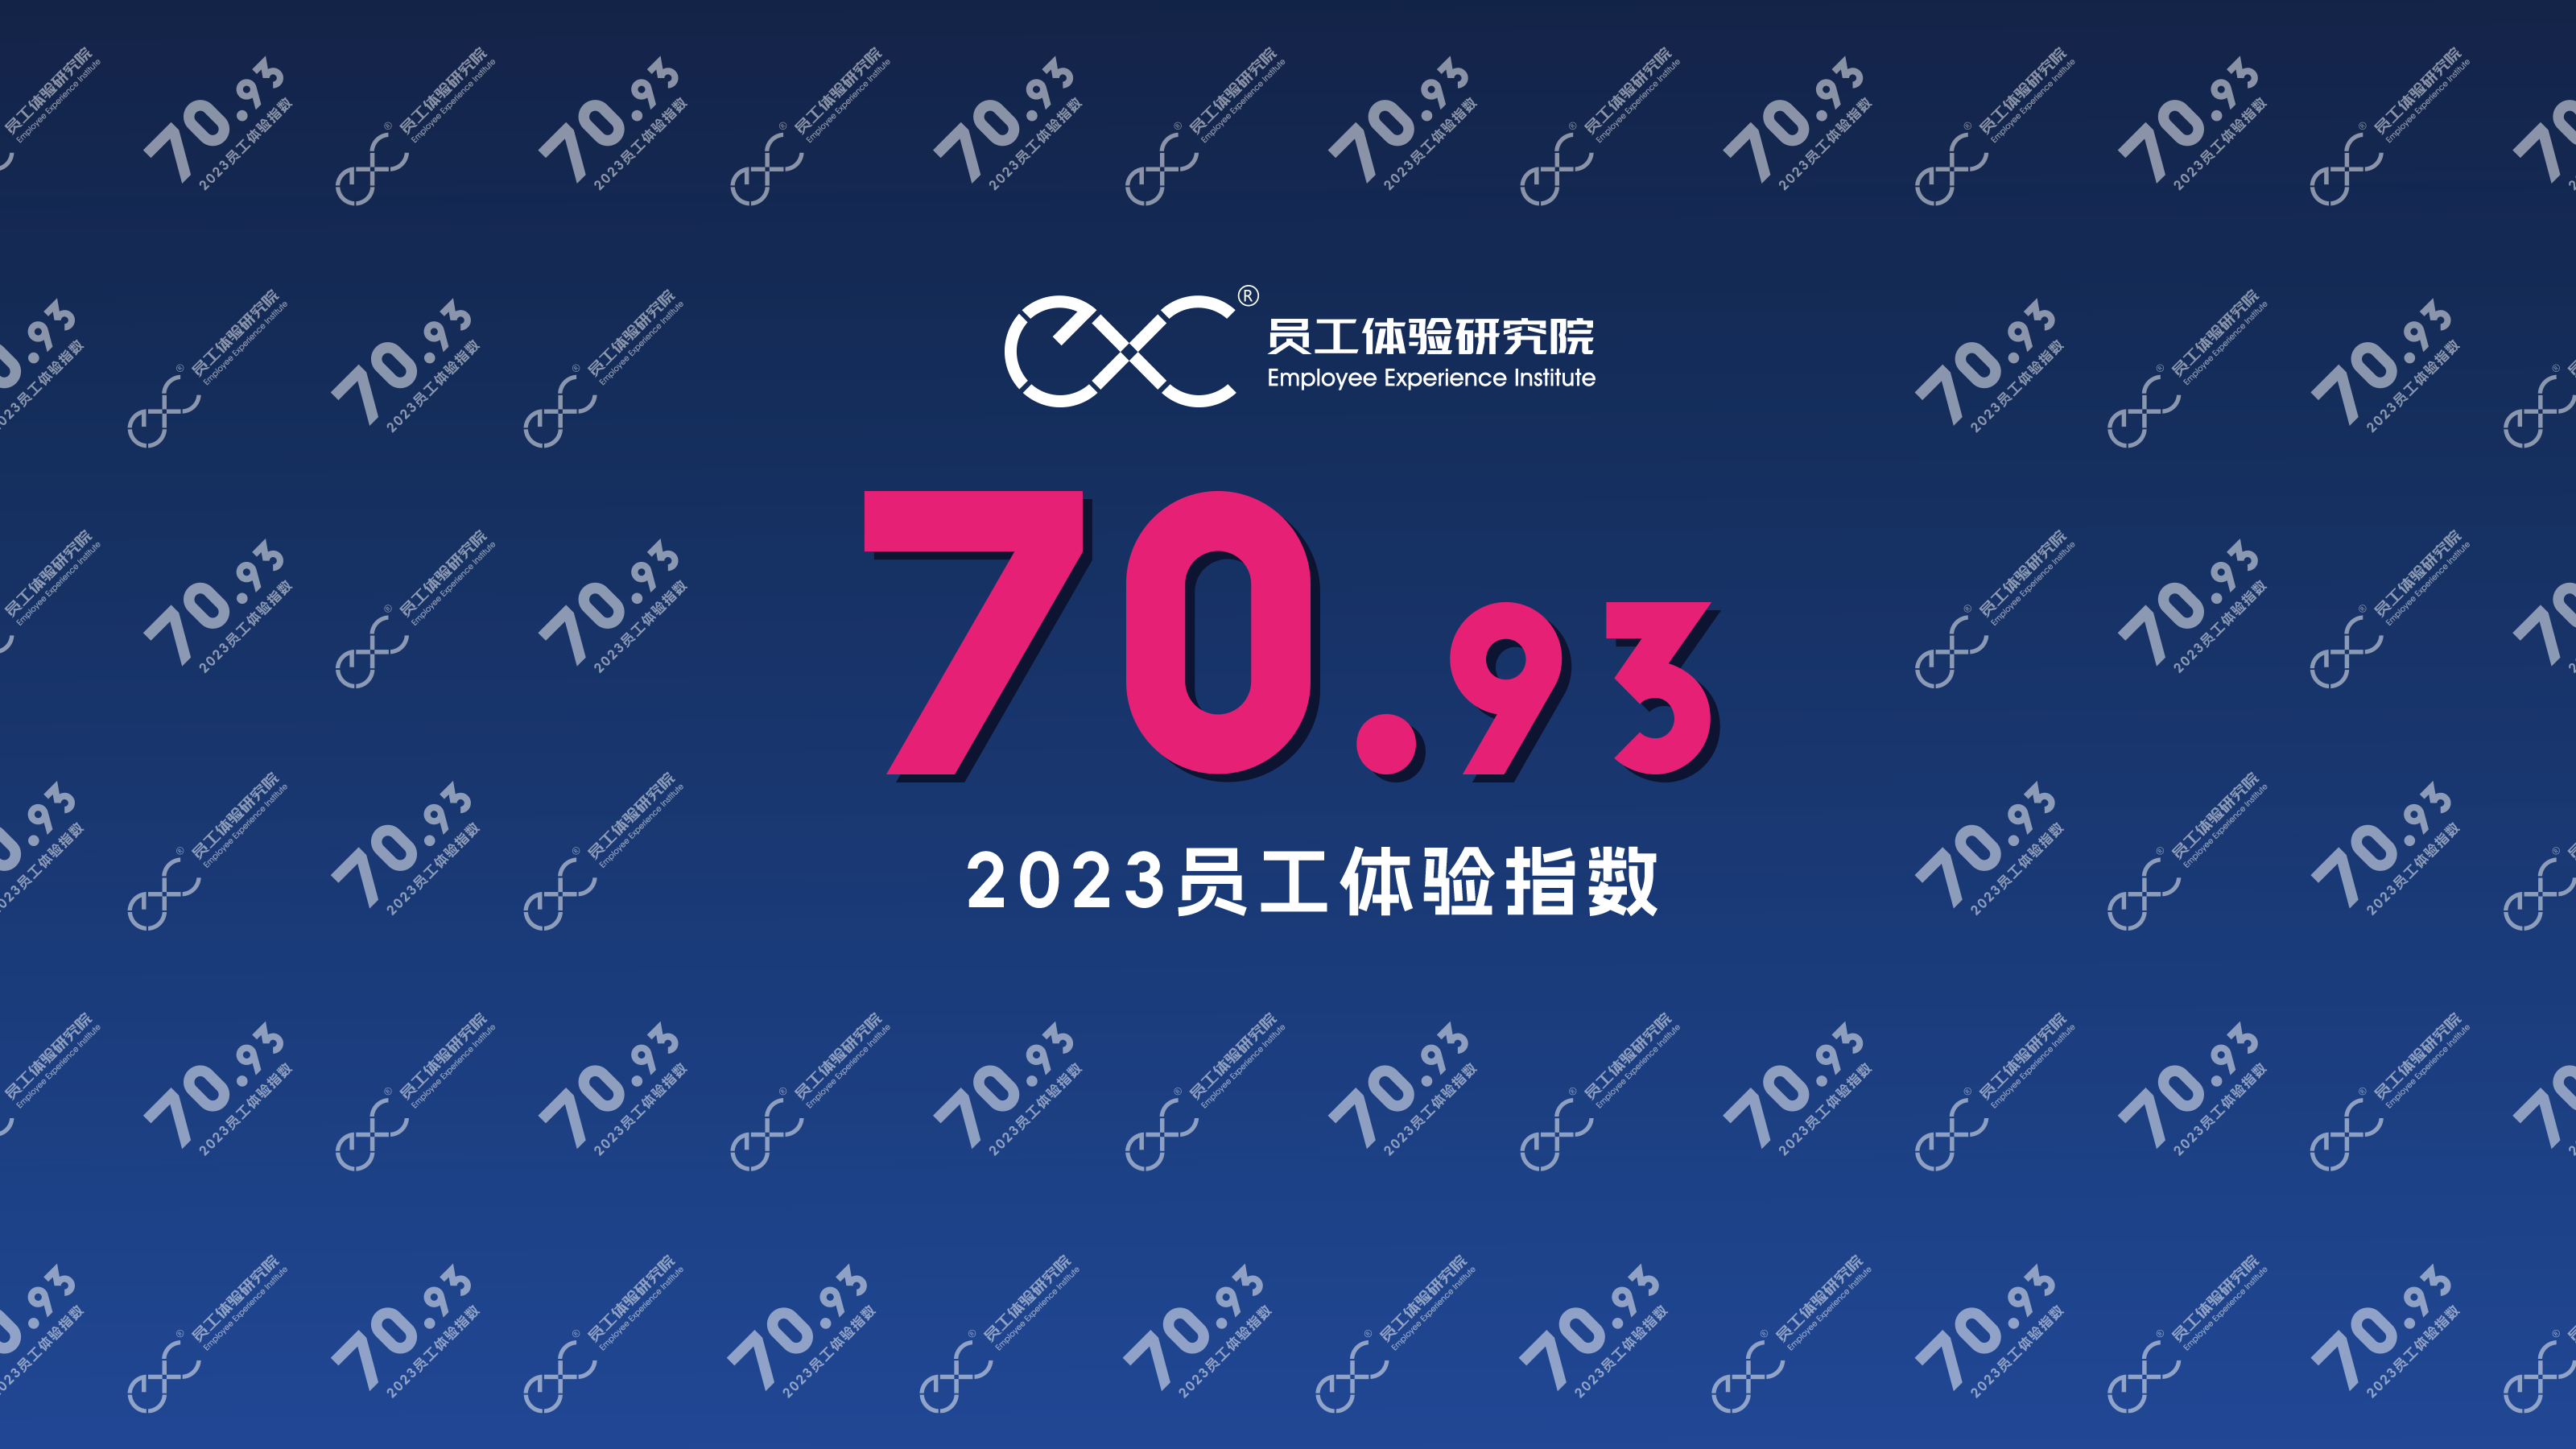 【70.93】2023中国员工体验指数正式揭晓：70.93！